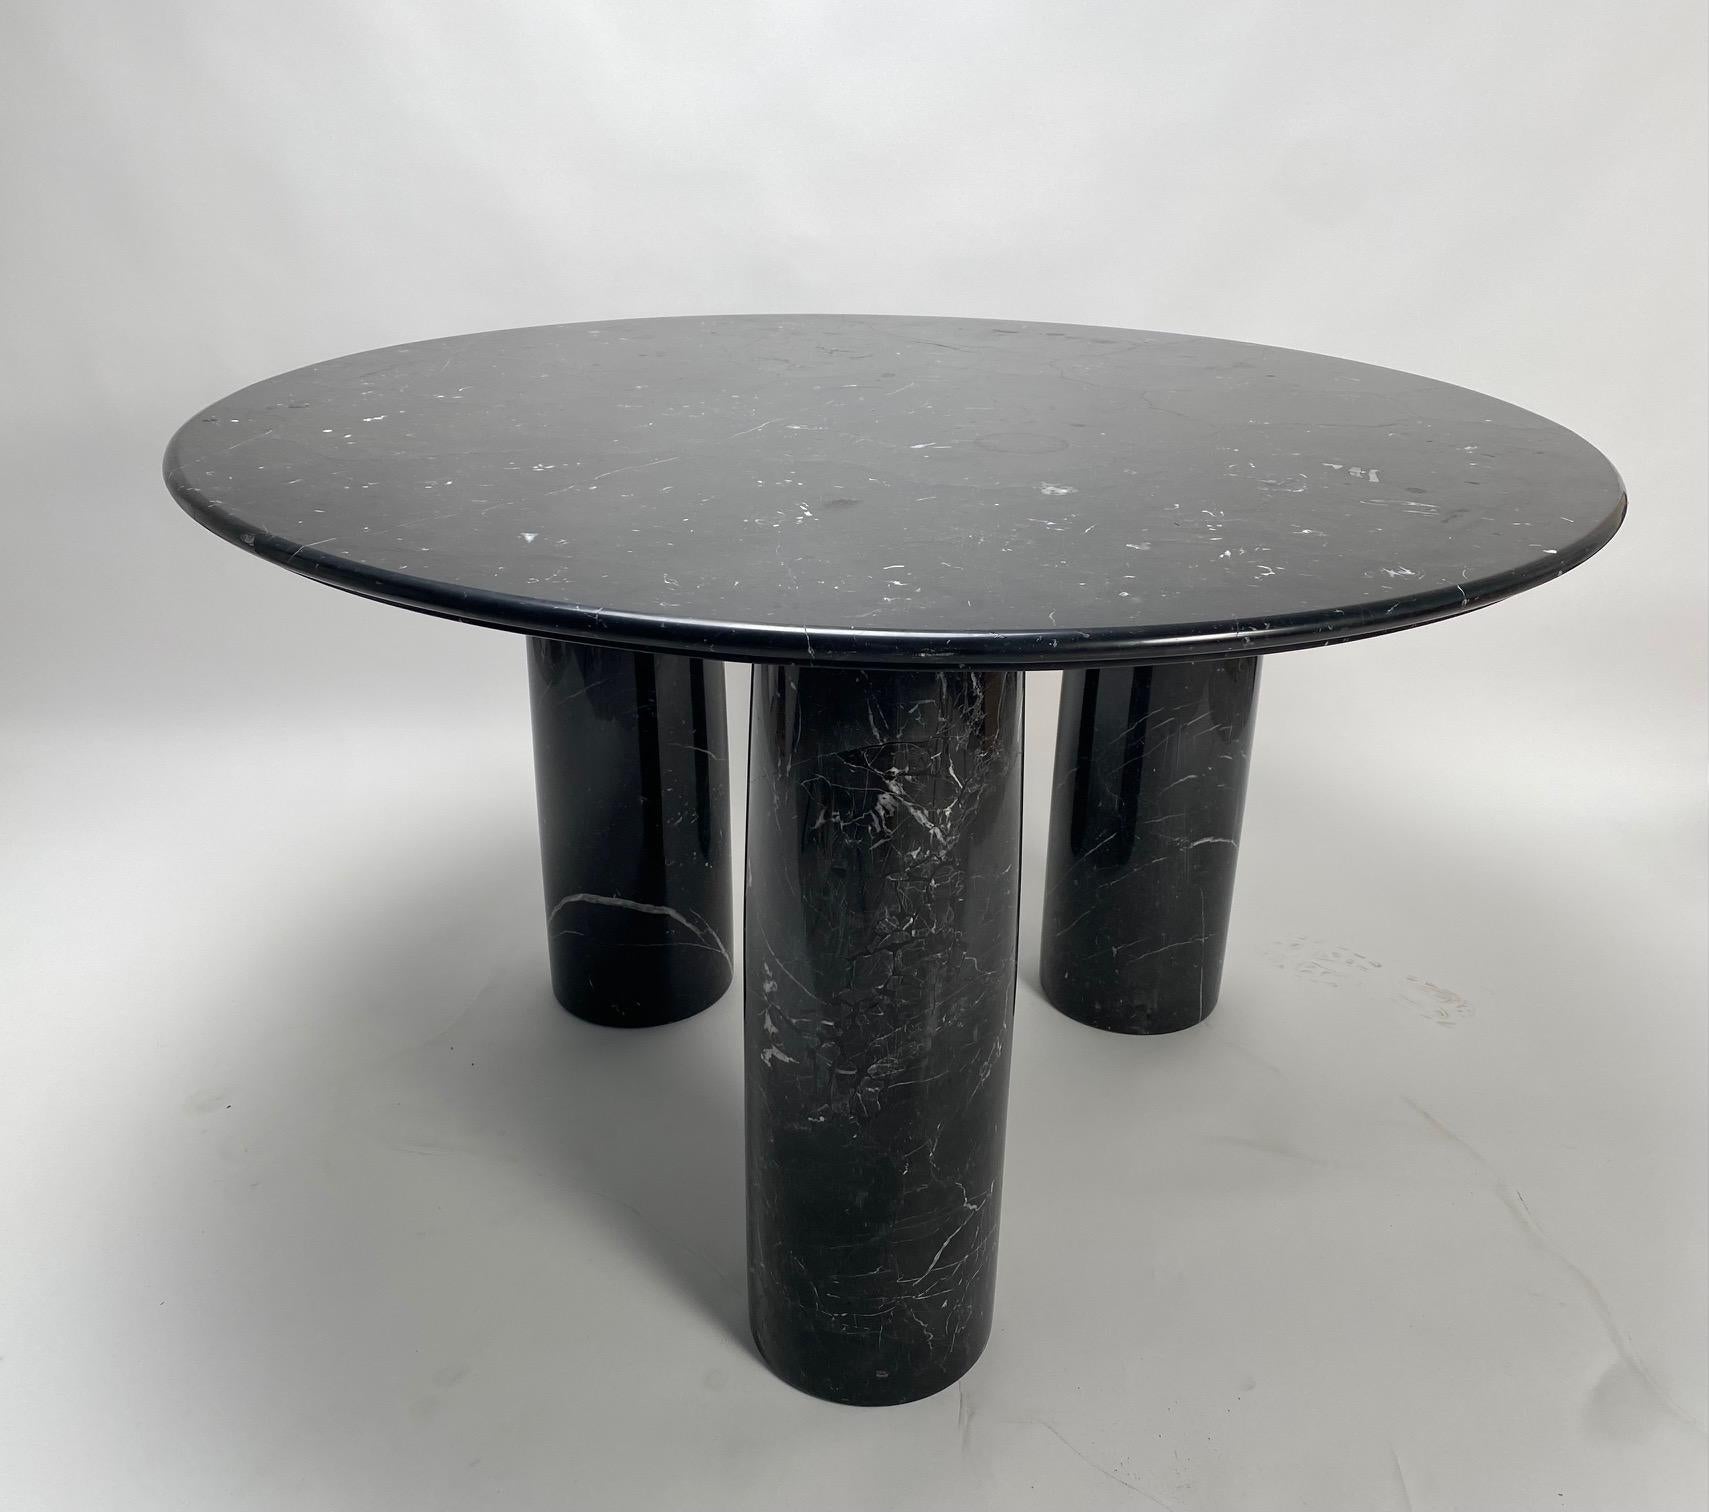 La table, conçue par le célèbre architecte italien Mario Bellini pour la société Cassina, a été imaginée dans les années 1970 et s'inspire de l'architecture des antiquités romaines. Ce spécimen a un sommet rond en marbre noir épais et trois grands